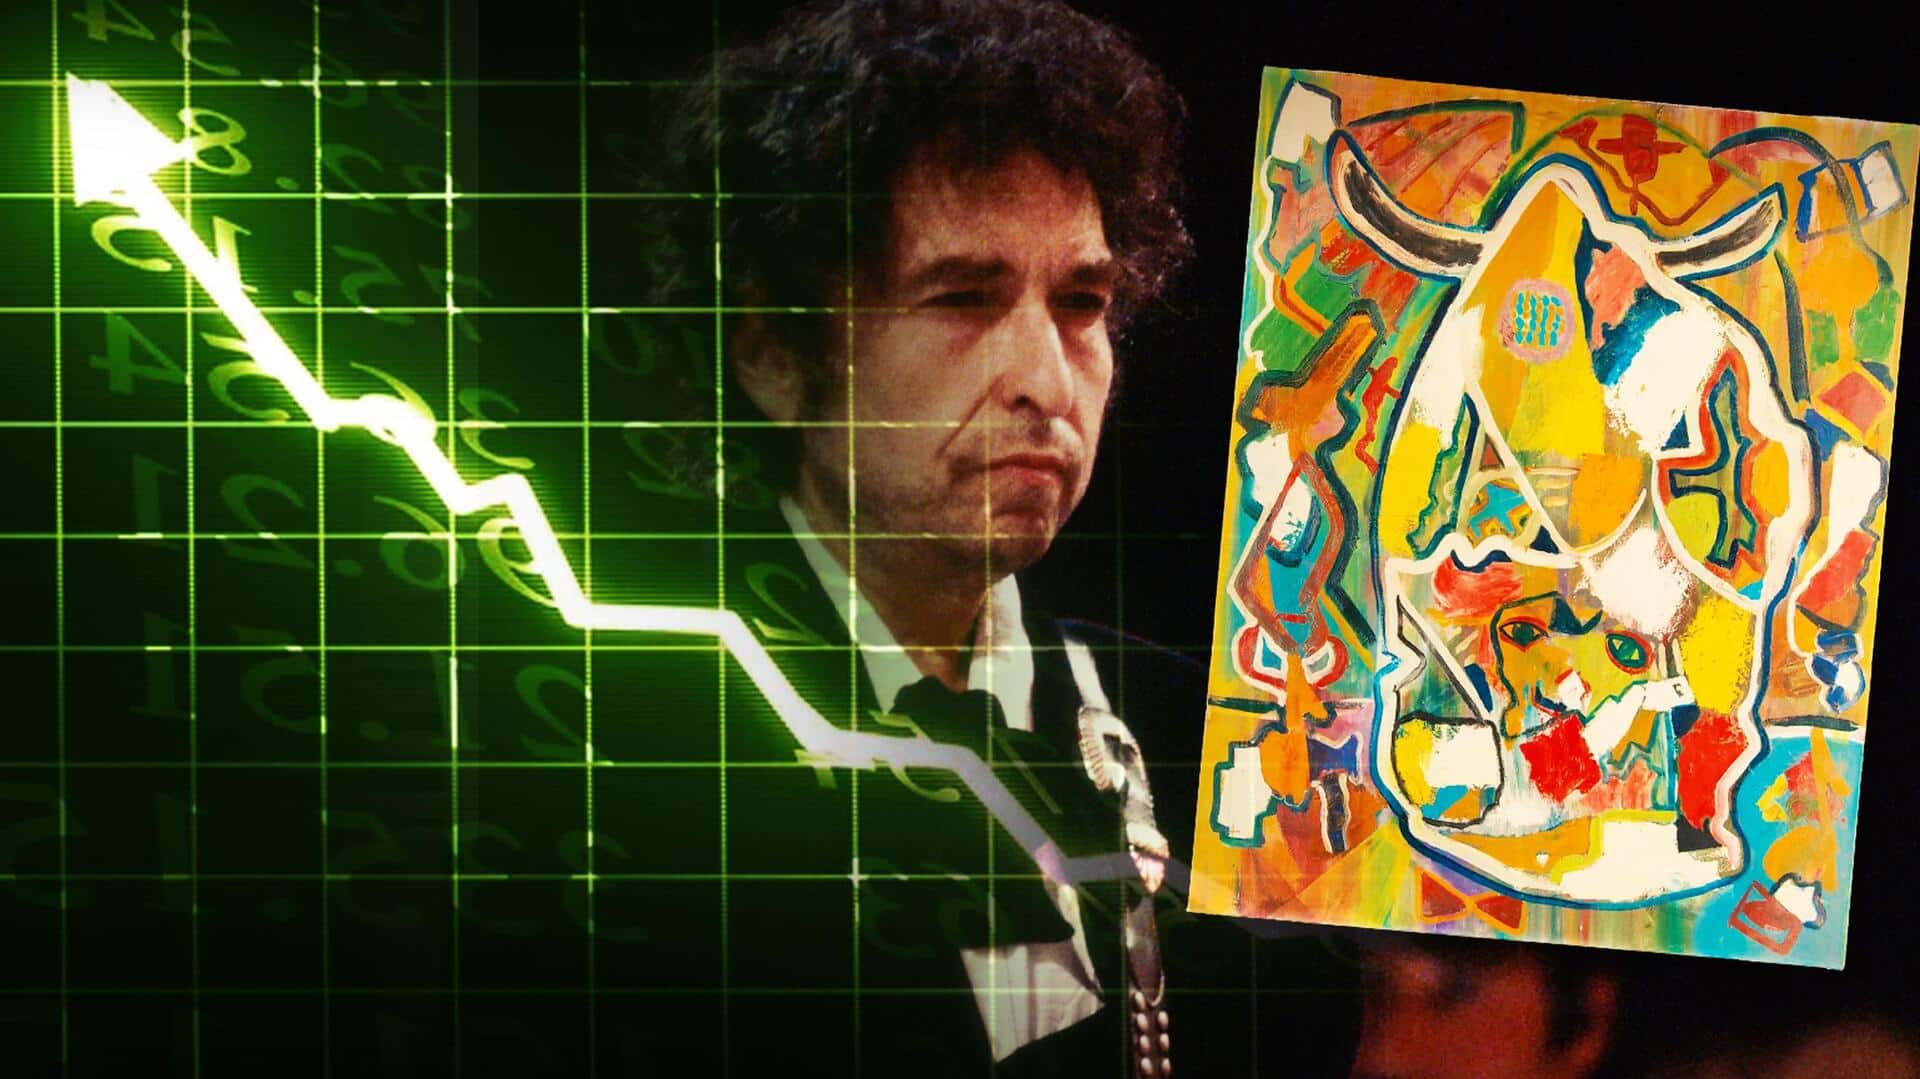 मशहूर कलाकार बॉब डिलन की पेंटिंग हो रही है नीलाम, अनुमानित कीमत 83 लाख रुपये